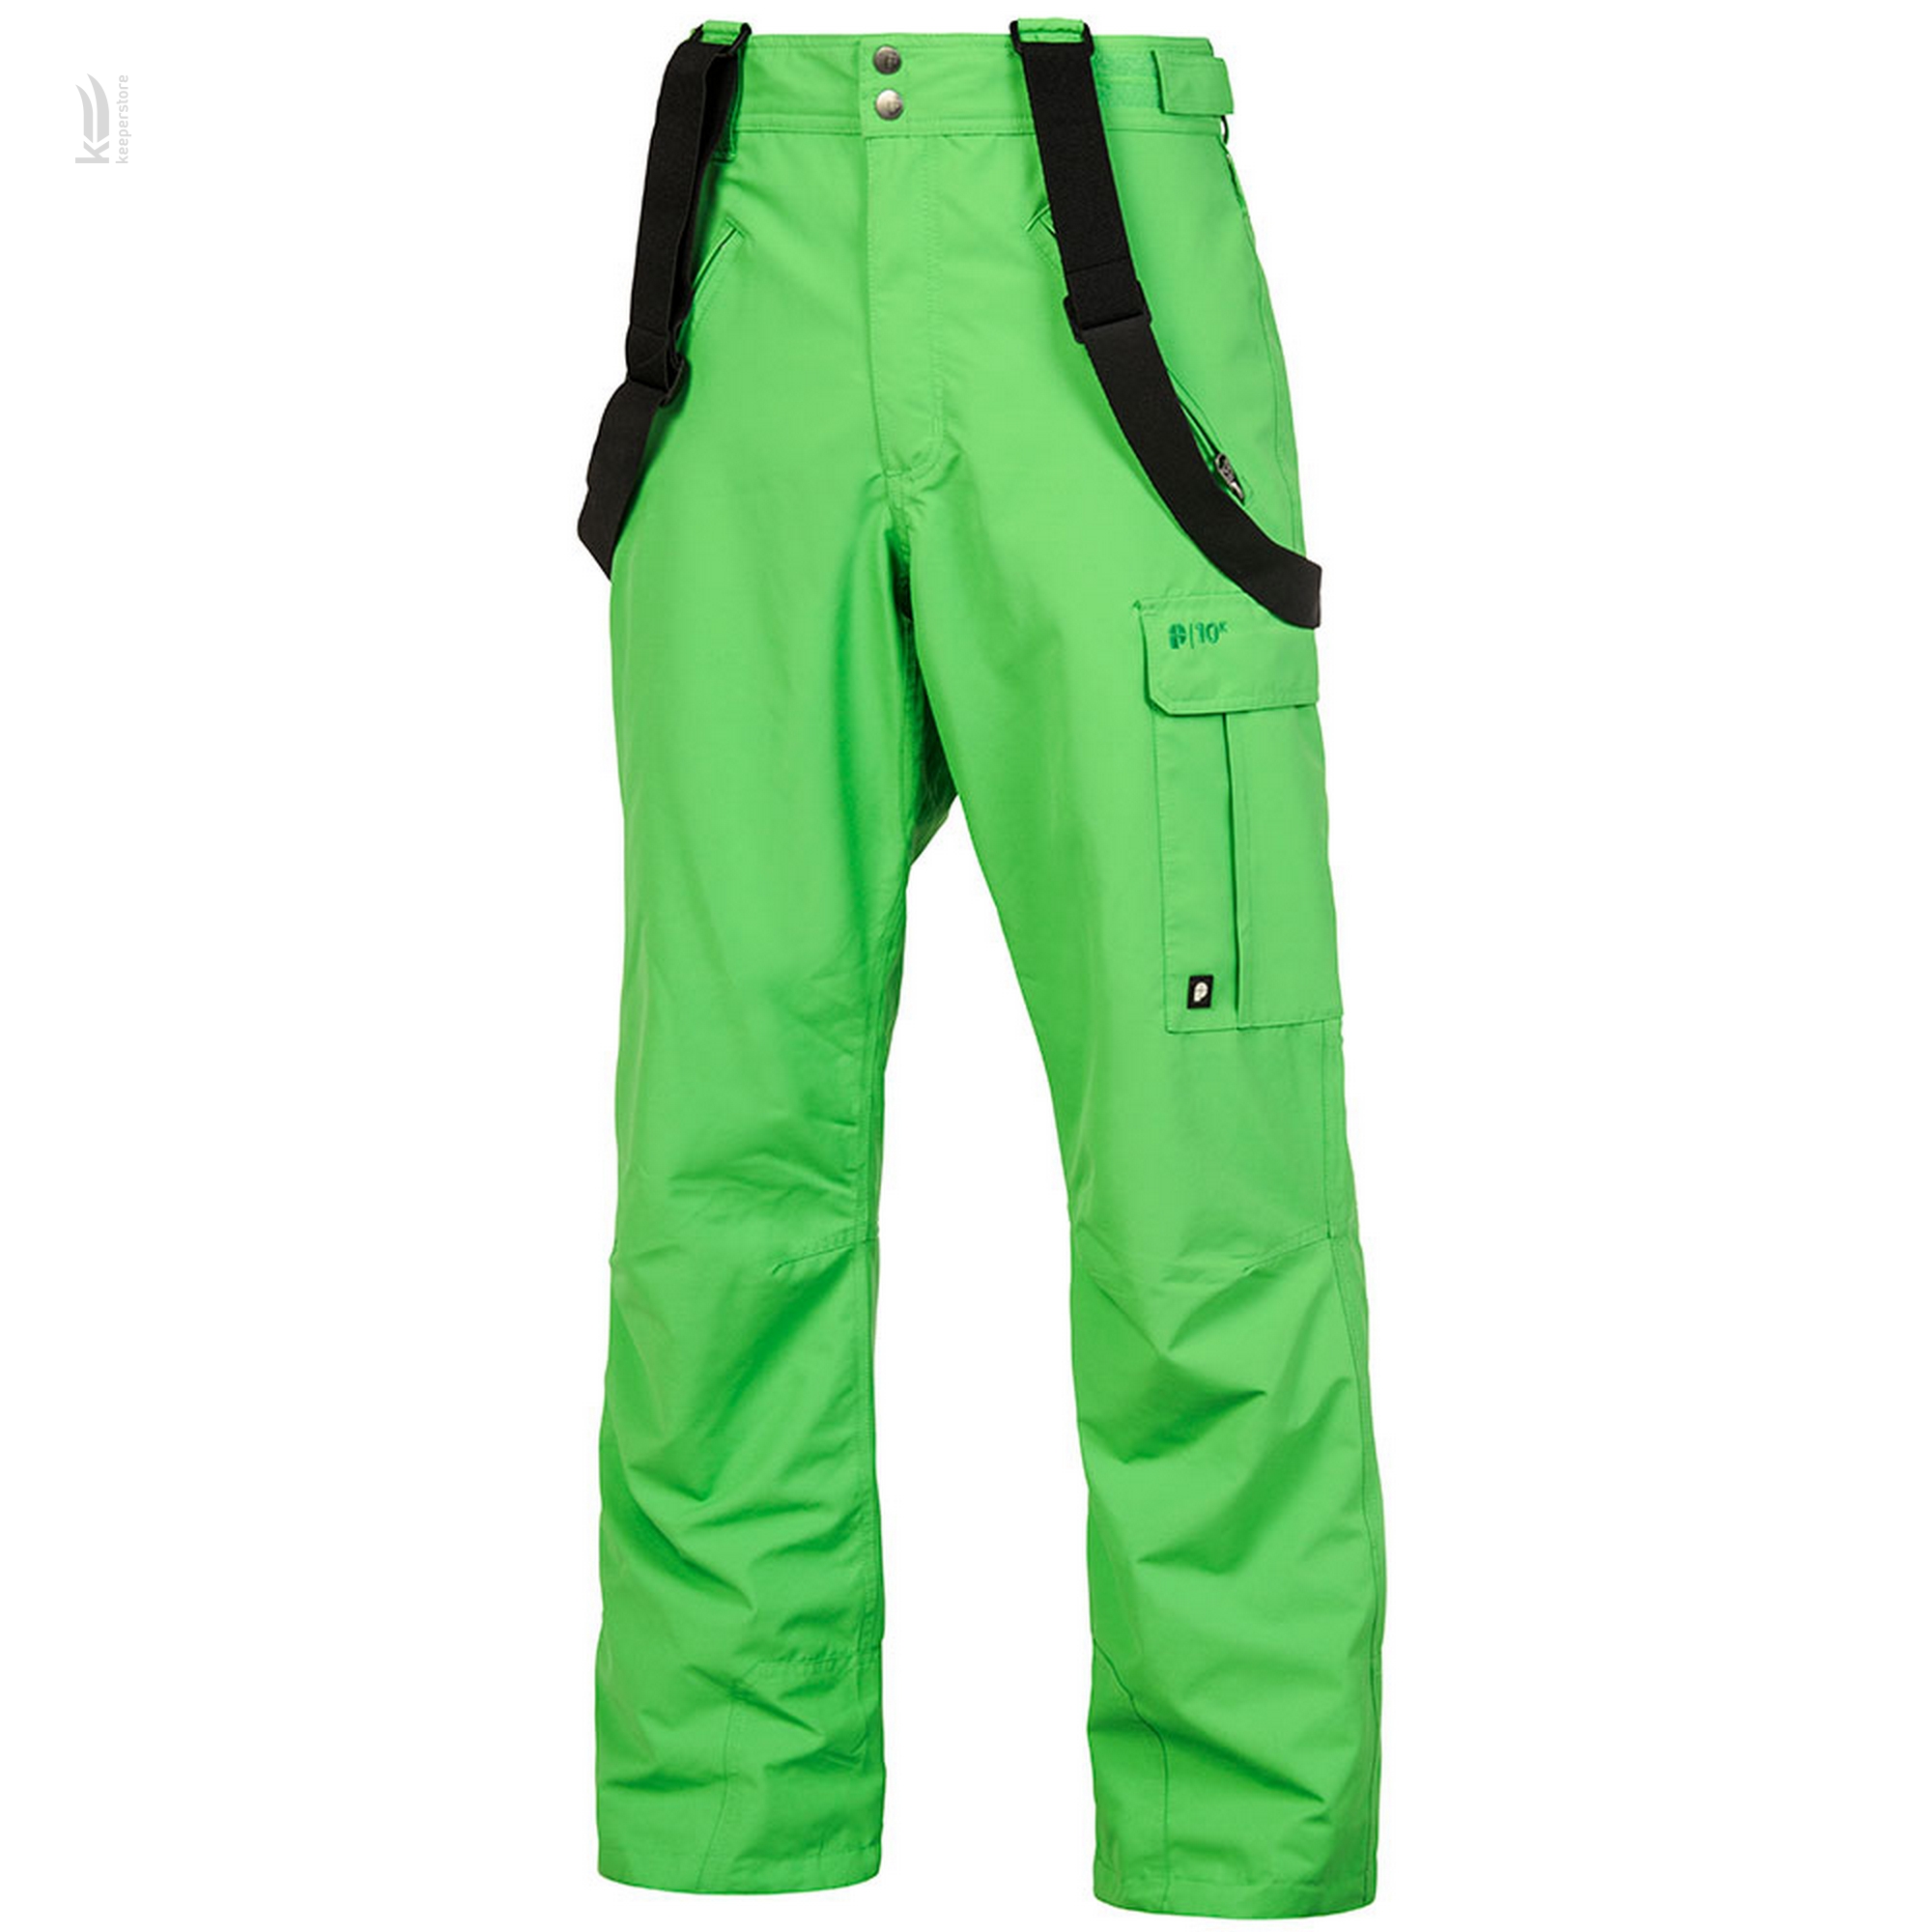 Чоловічі сноубордистські штани Fasc Monarch Green Pants (M)